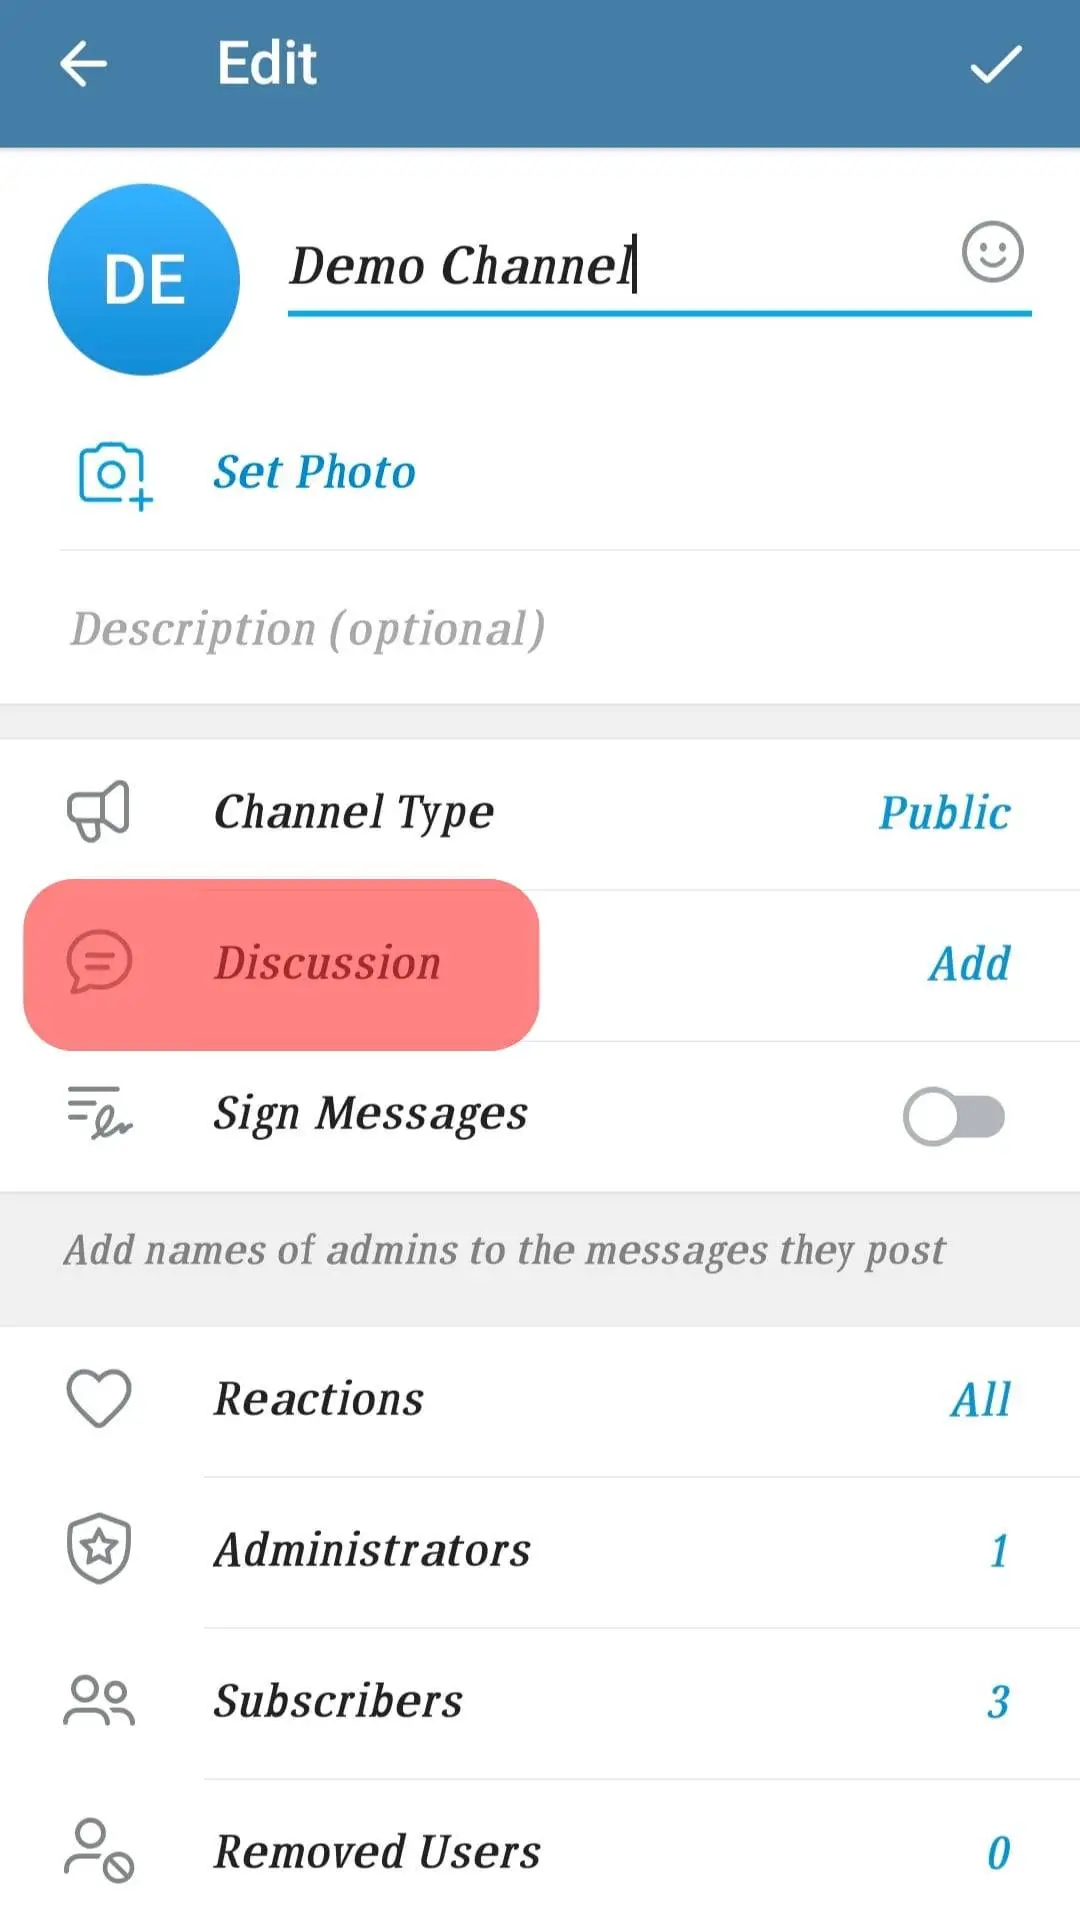 ¿Por qué no puedo comentar sobre Telegram?